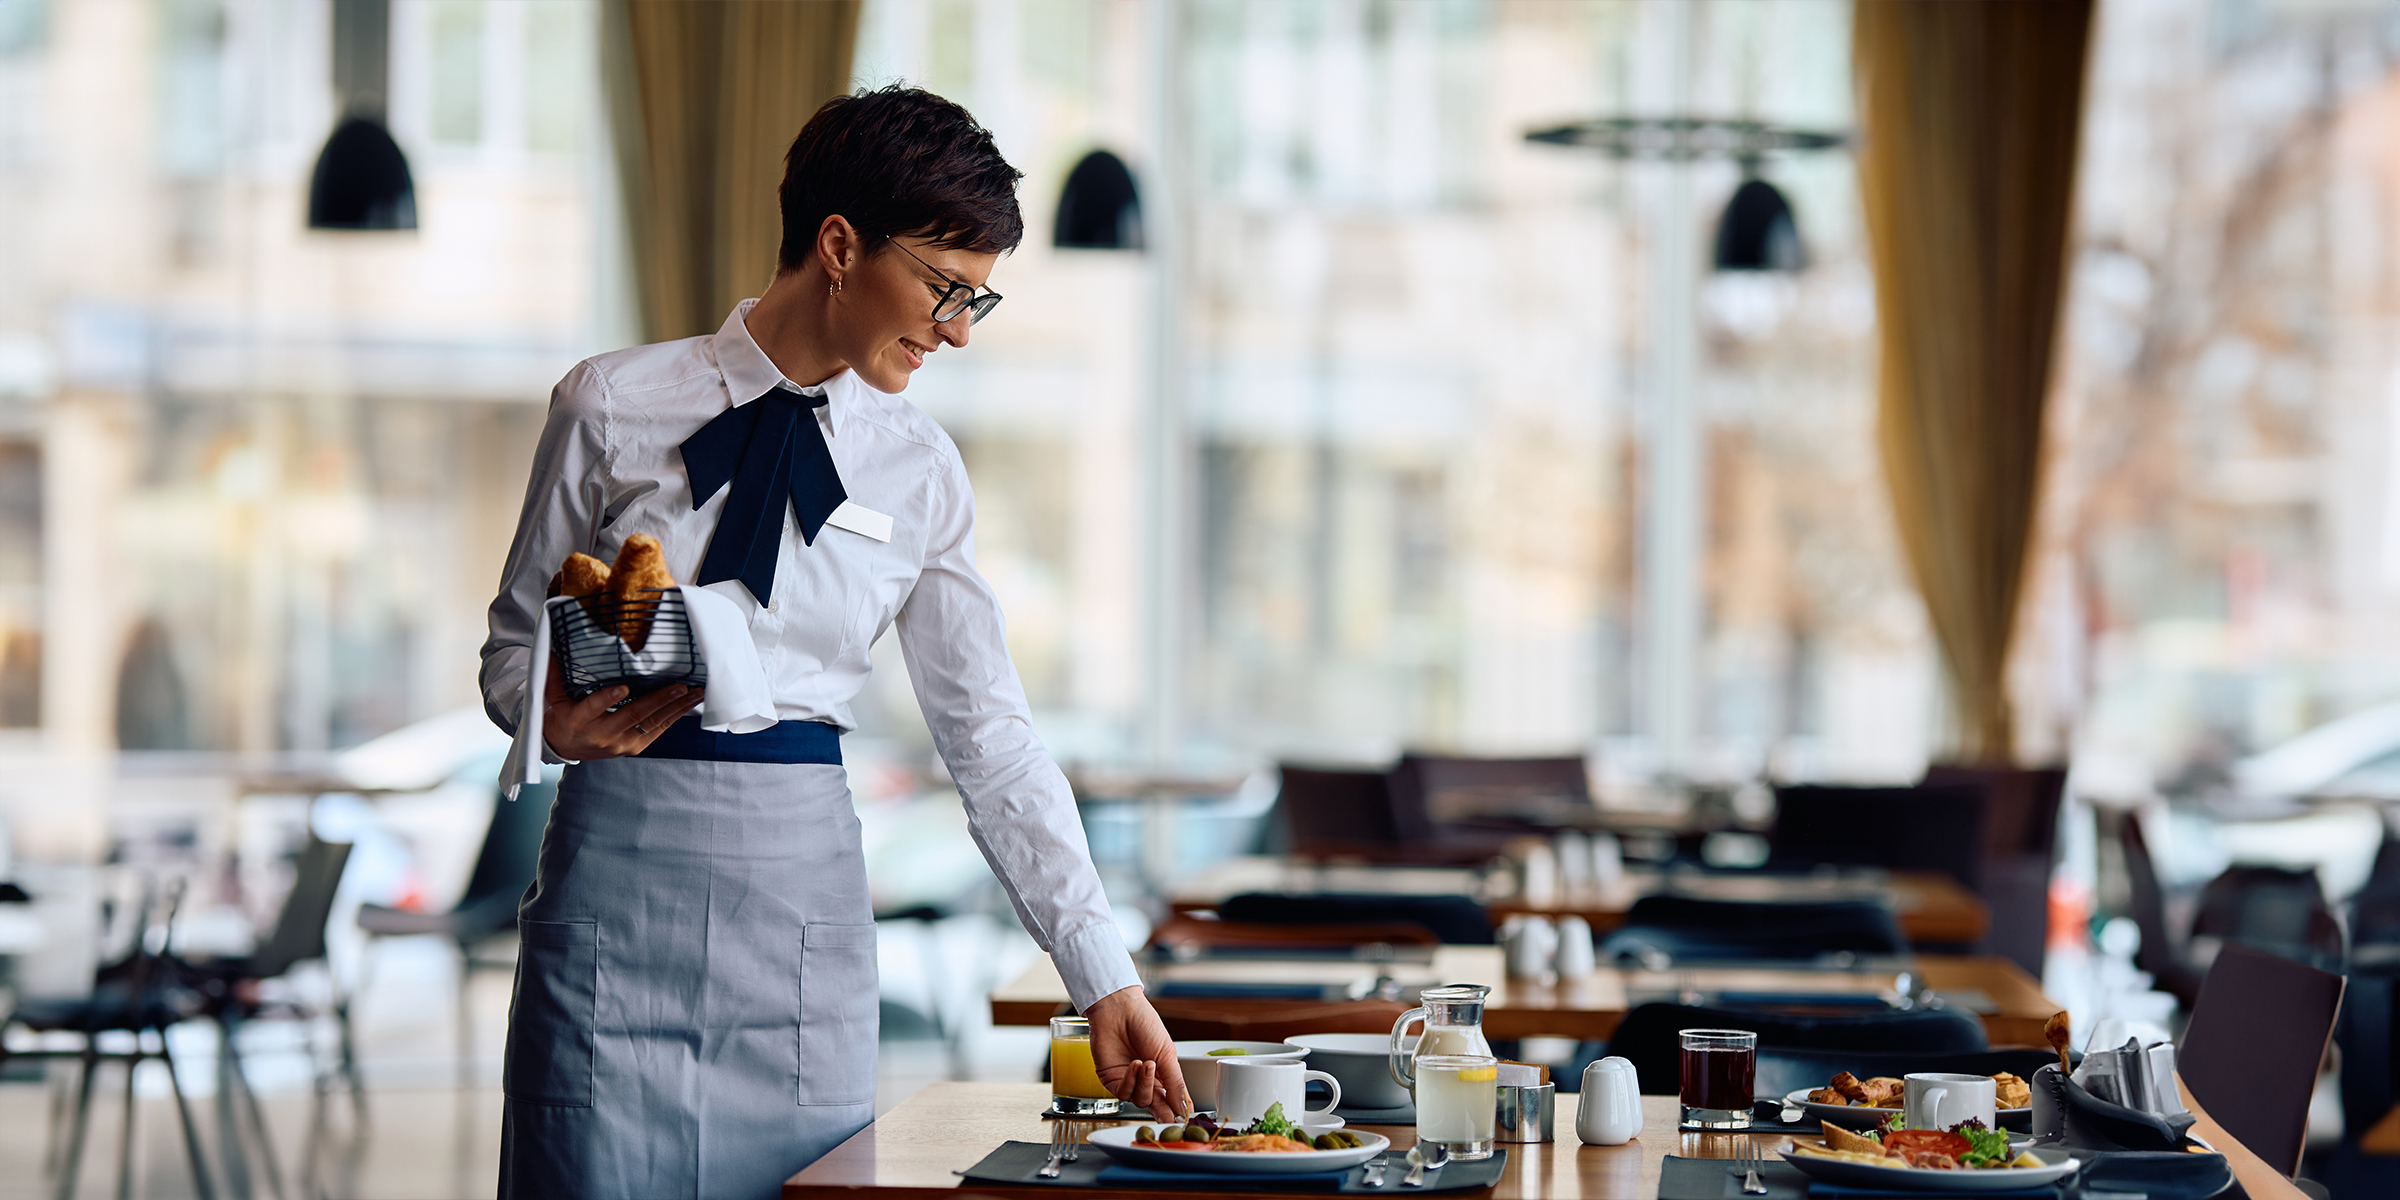 A waitress in a restaurant | Source: Shutterstock